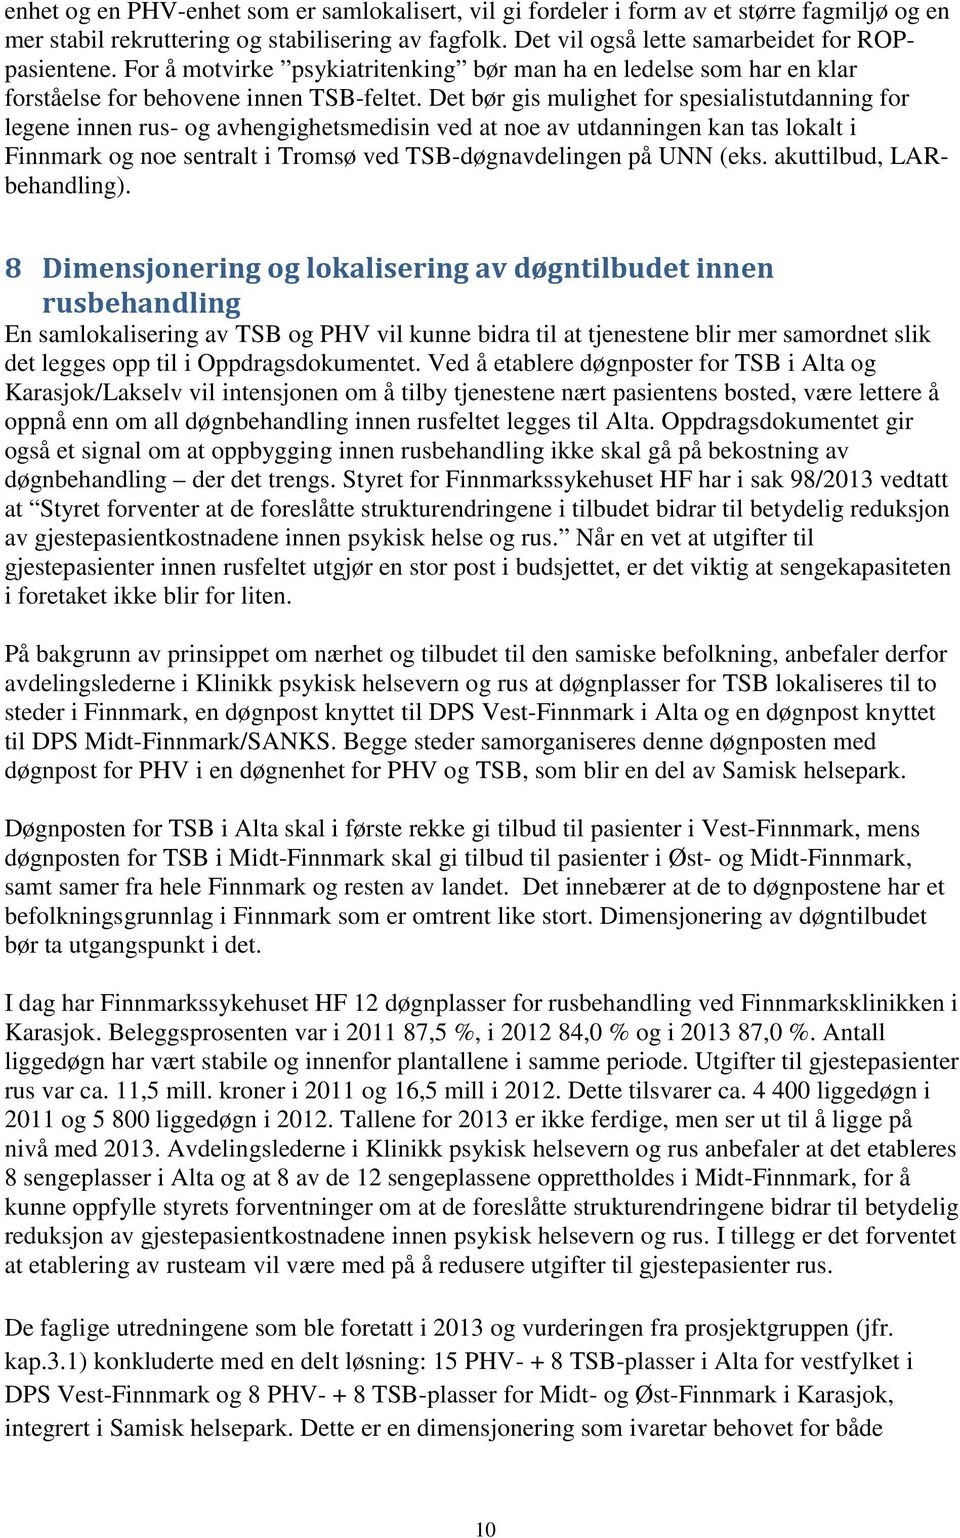 Det bør gis mulighet for spesialistutdanning for legene innen rus- og avhengighetsmedisin ved at noe av utdanningen kan tas lokalt i Finnmark og noe sentralt i Tromsø ved TSB-døgnavdelingen på UNN